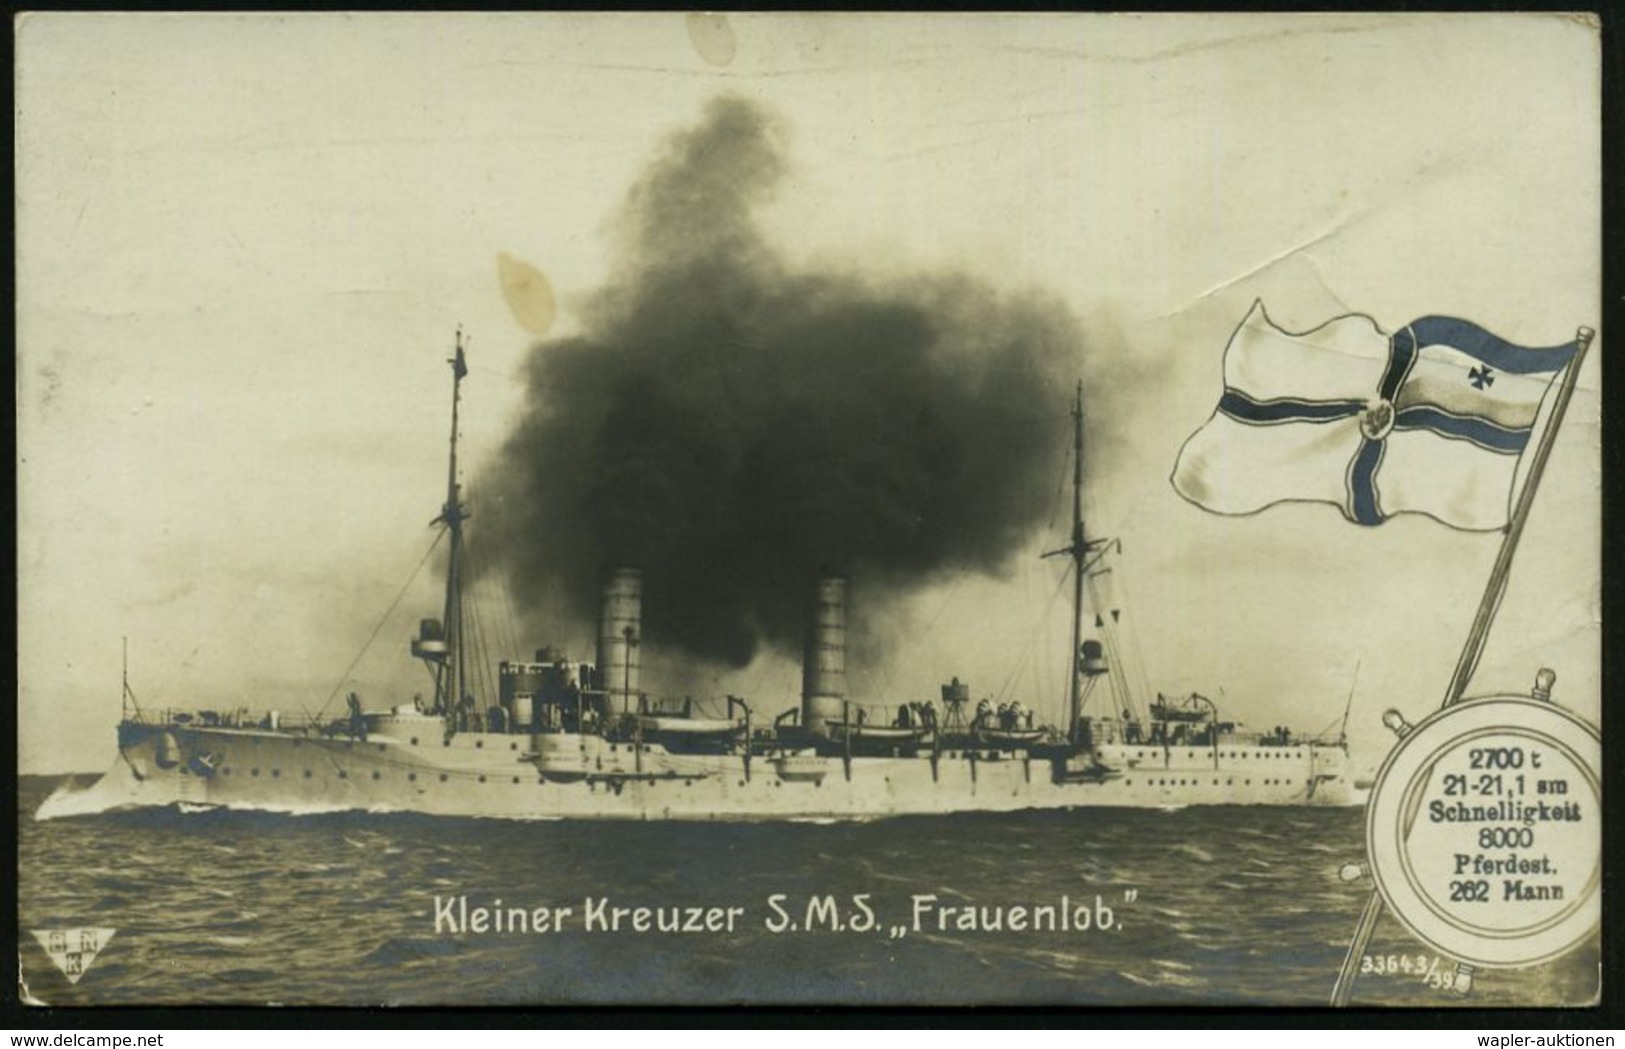 DEUTSCHES REICH 1914 Viol. 1K-Steg-HdN: Kaiserliche Marine/Kommando S.M.S. "Frauenlob" = Kleiner Kreuzer, Am 31. Mai 191 - Maritime